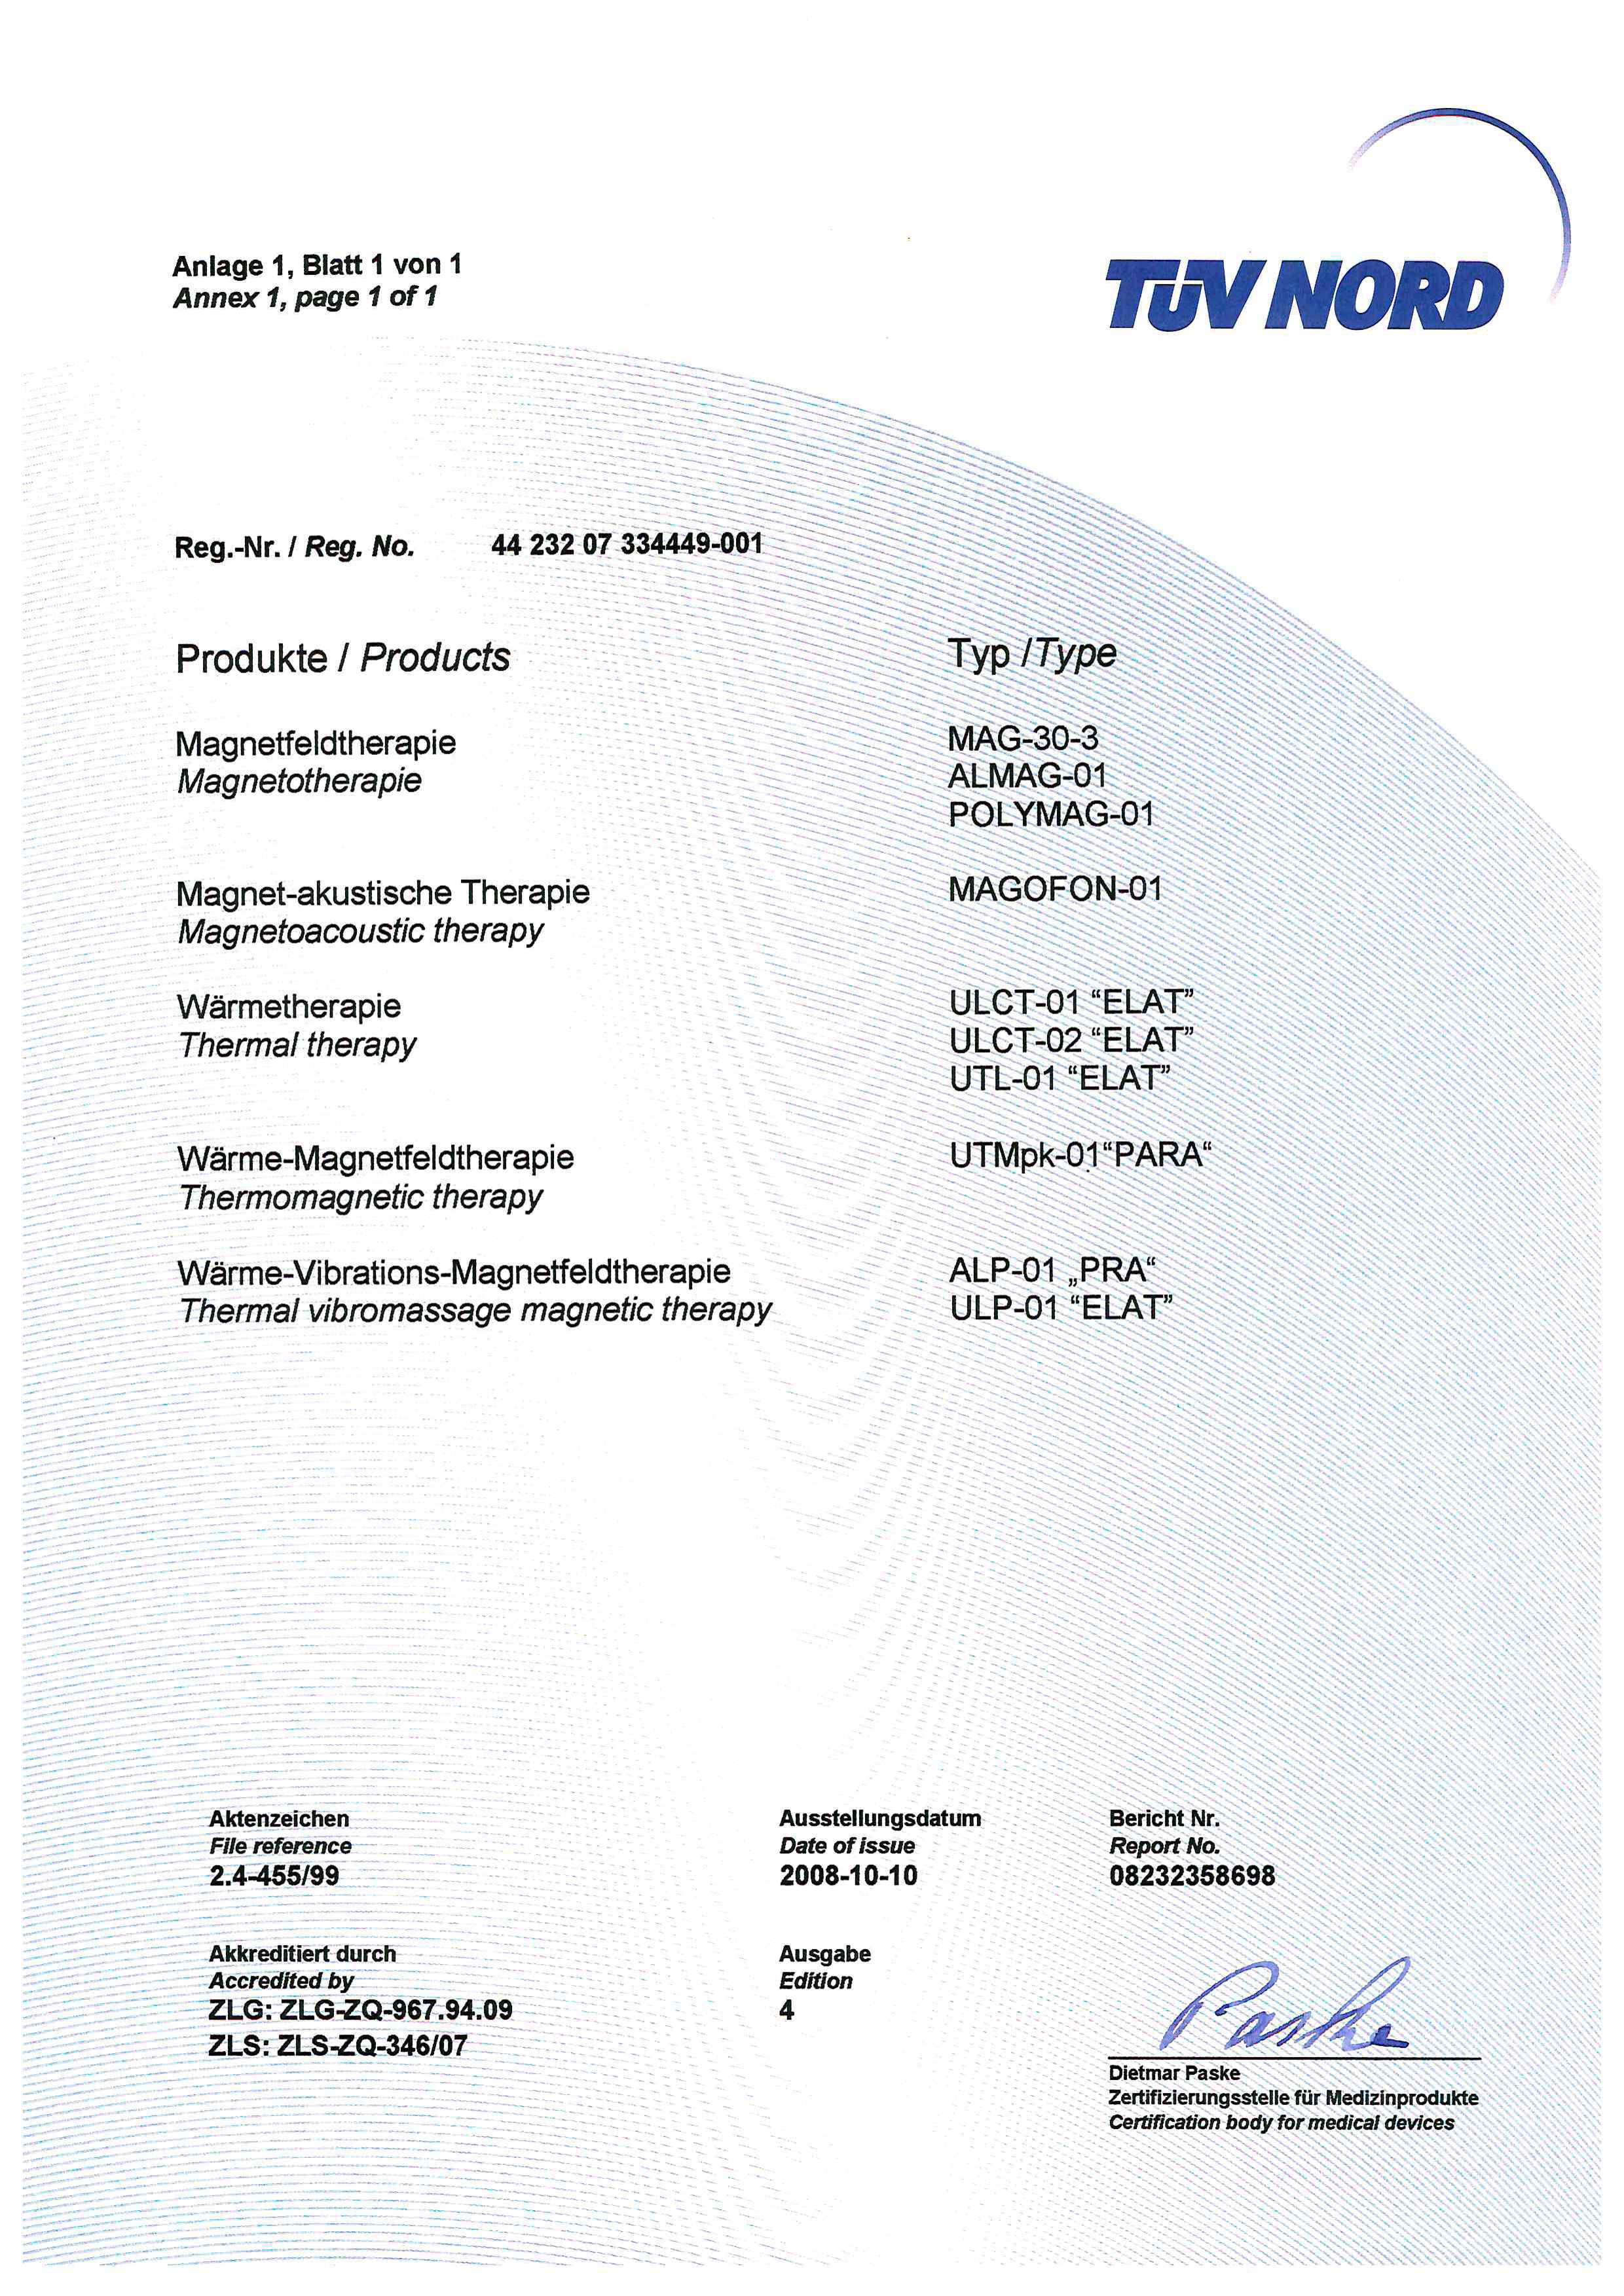 2008 жылғы MDD сертификаты, 2-бет